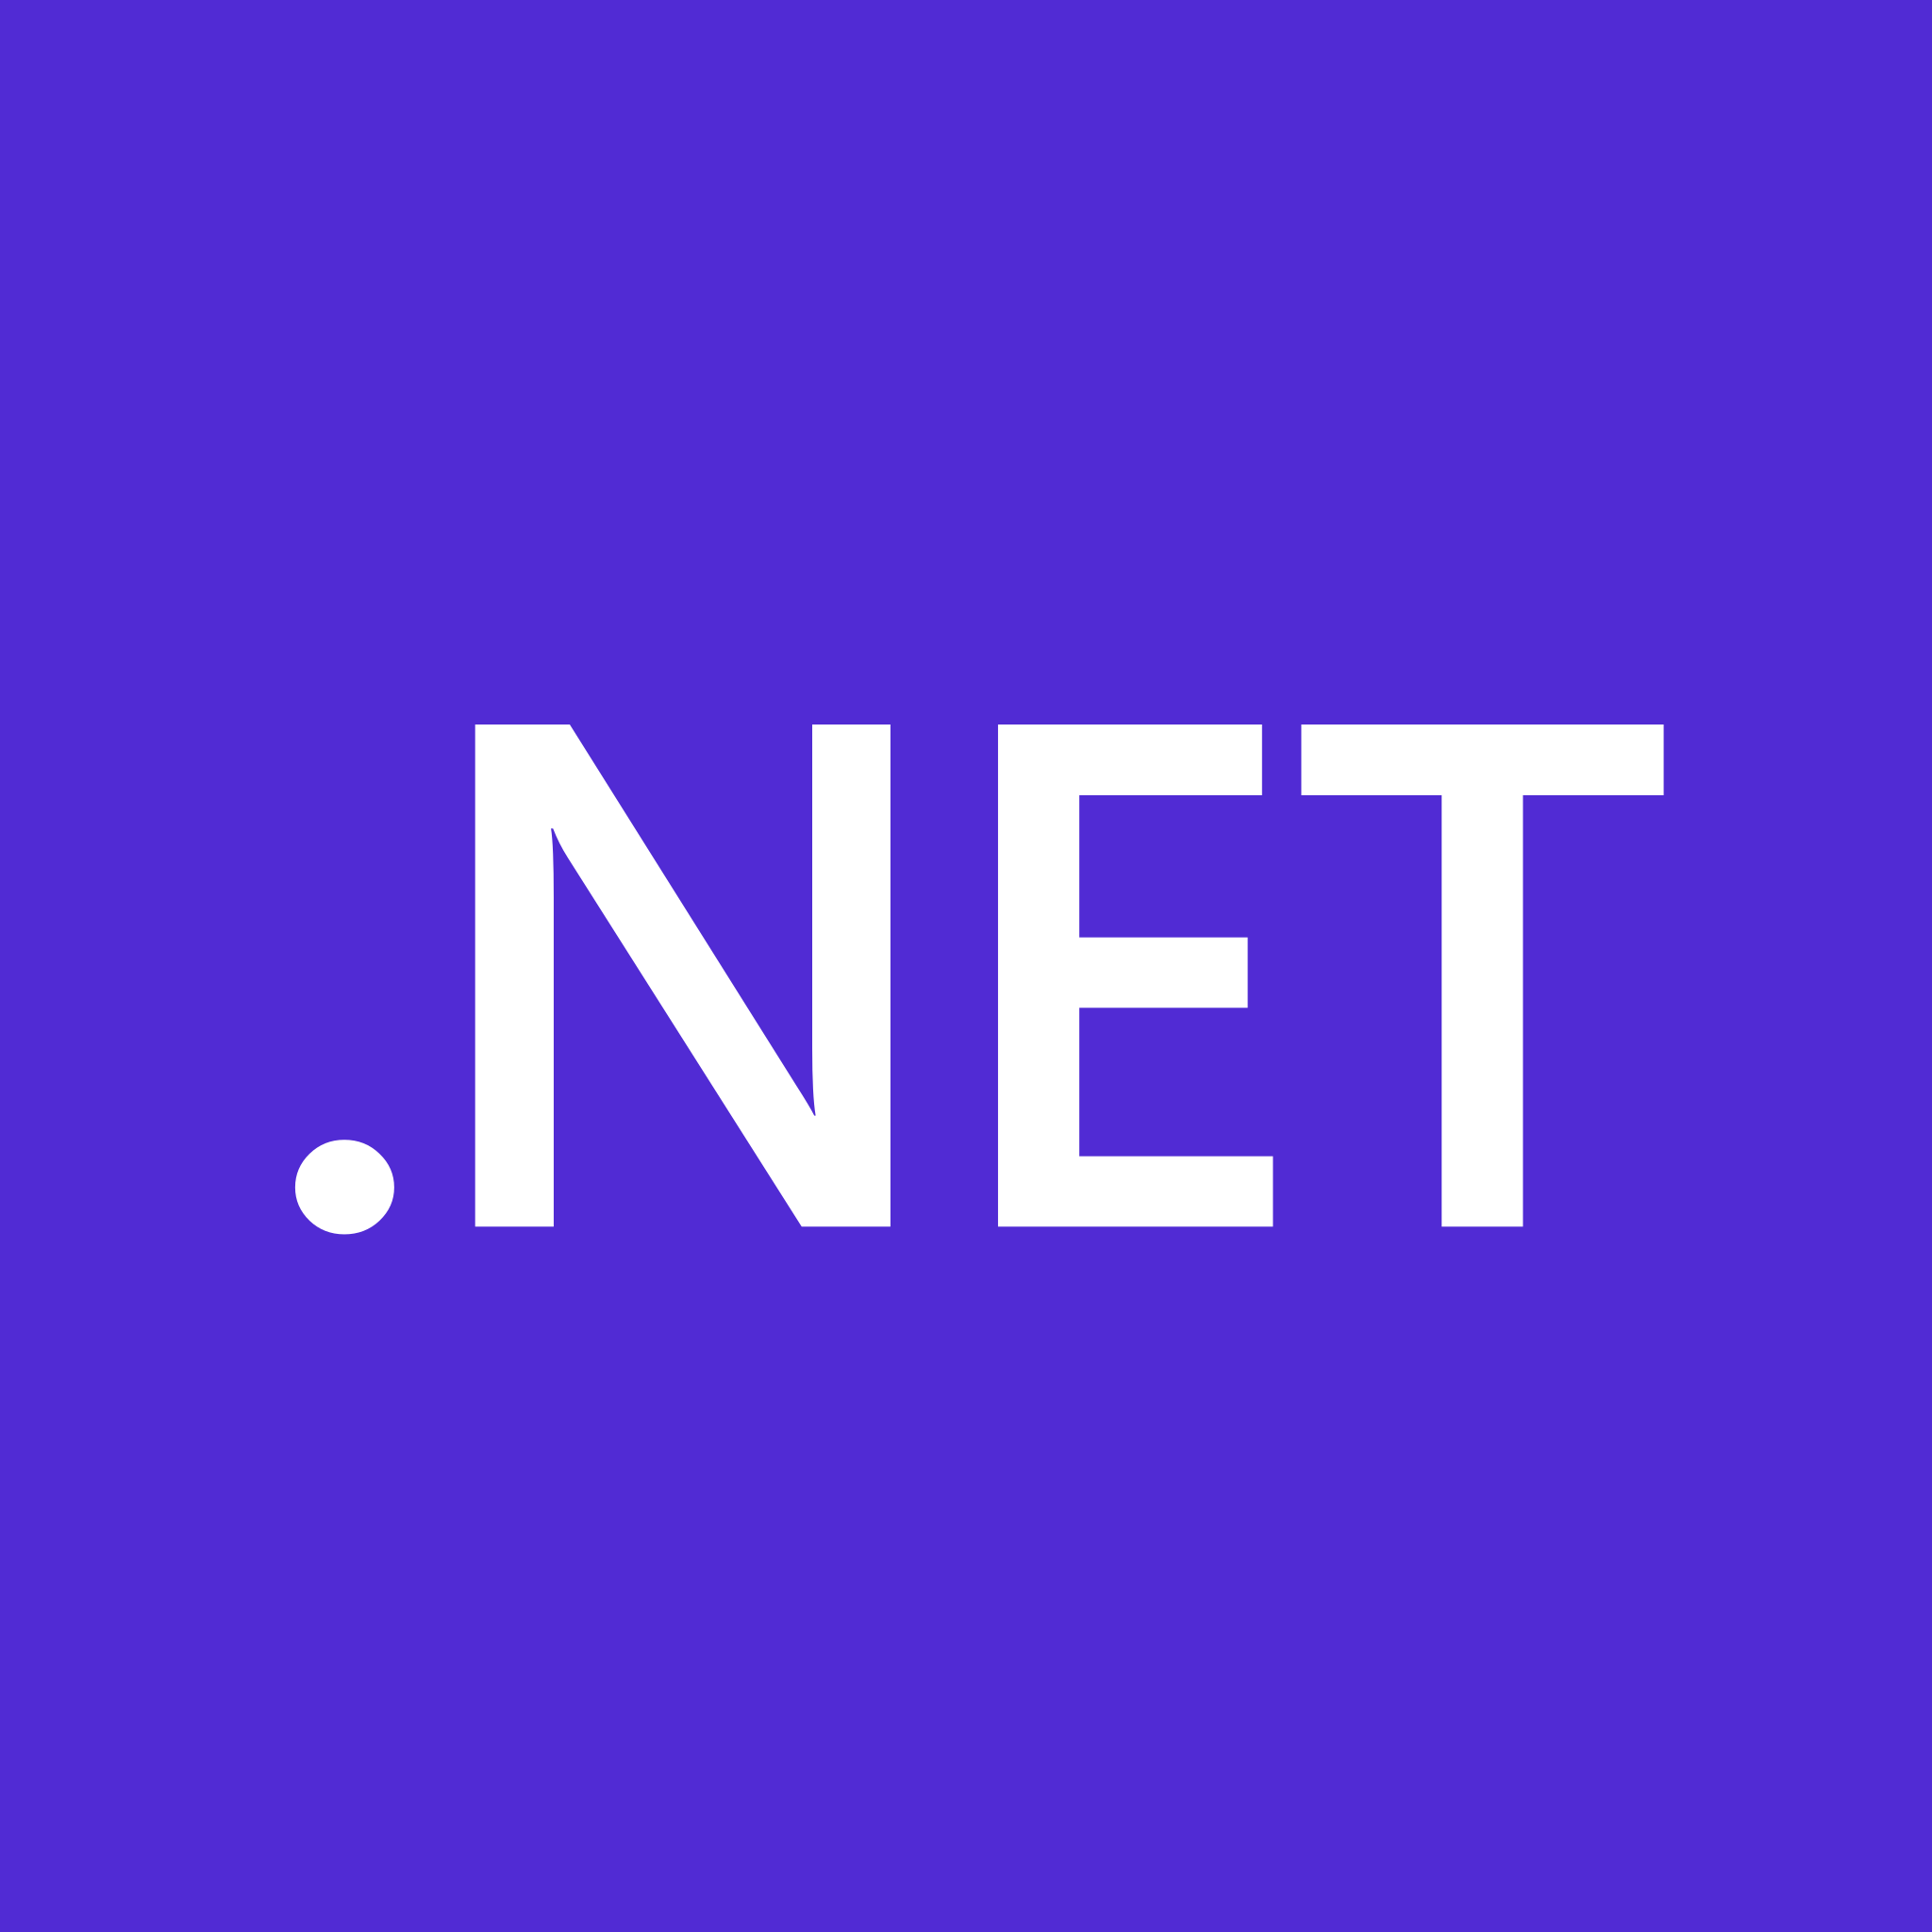 Dot Net